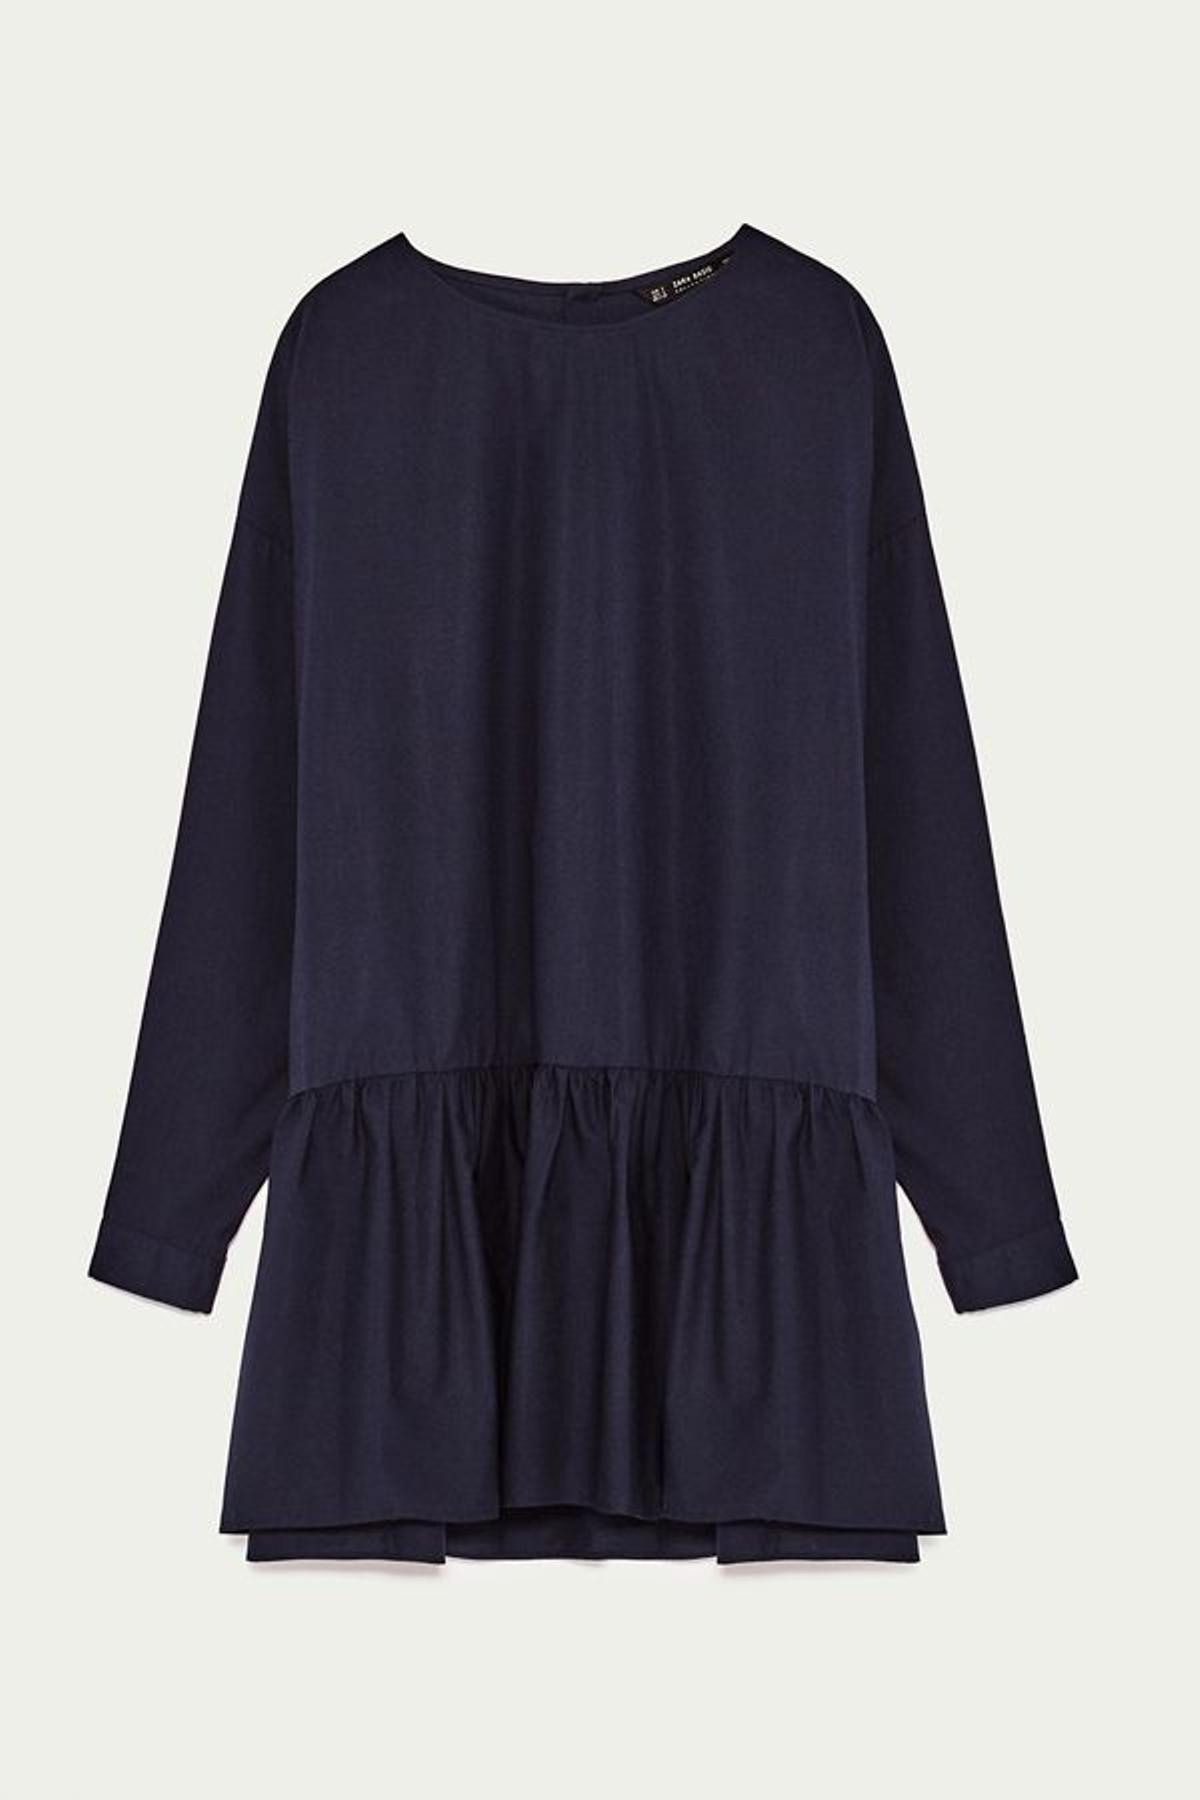 Vestidos camiseros de Zara en rebajas: con falda plisada